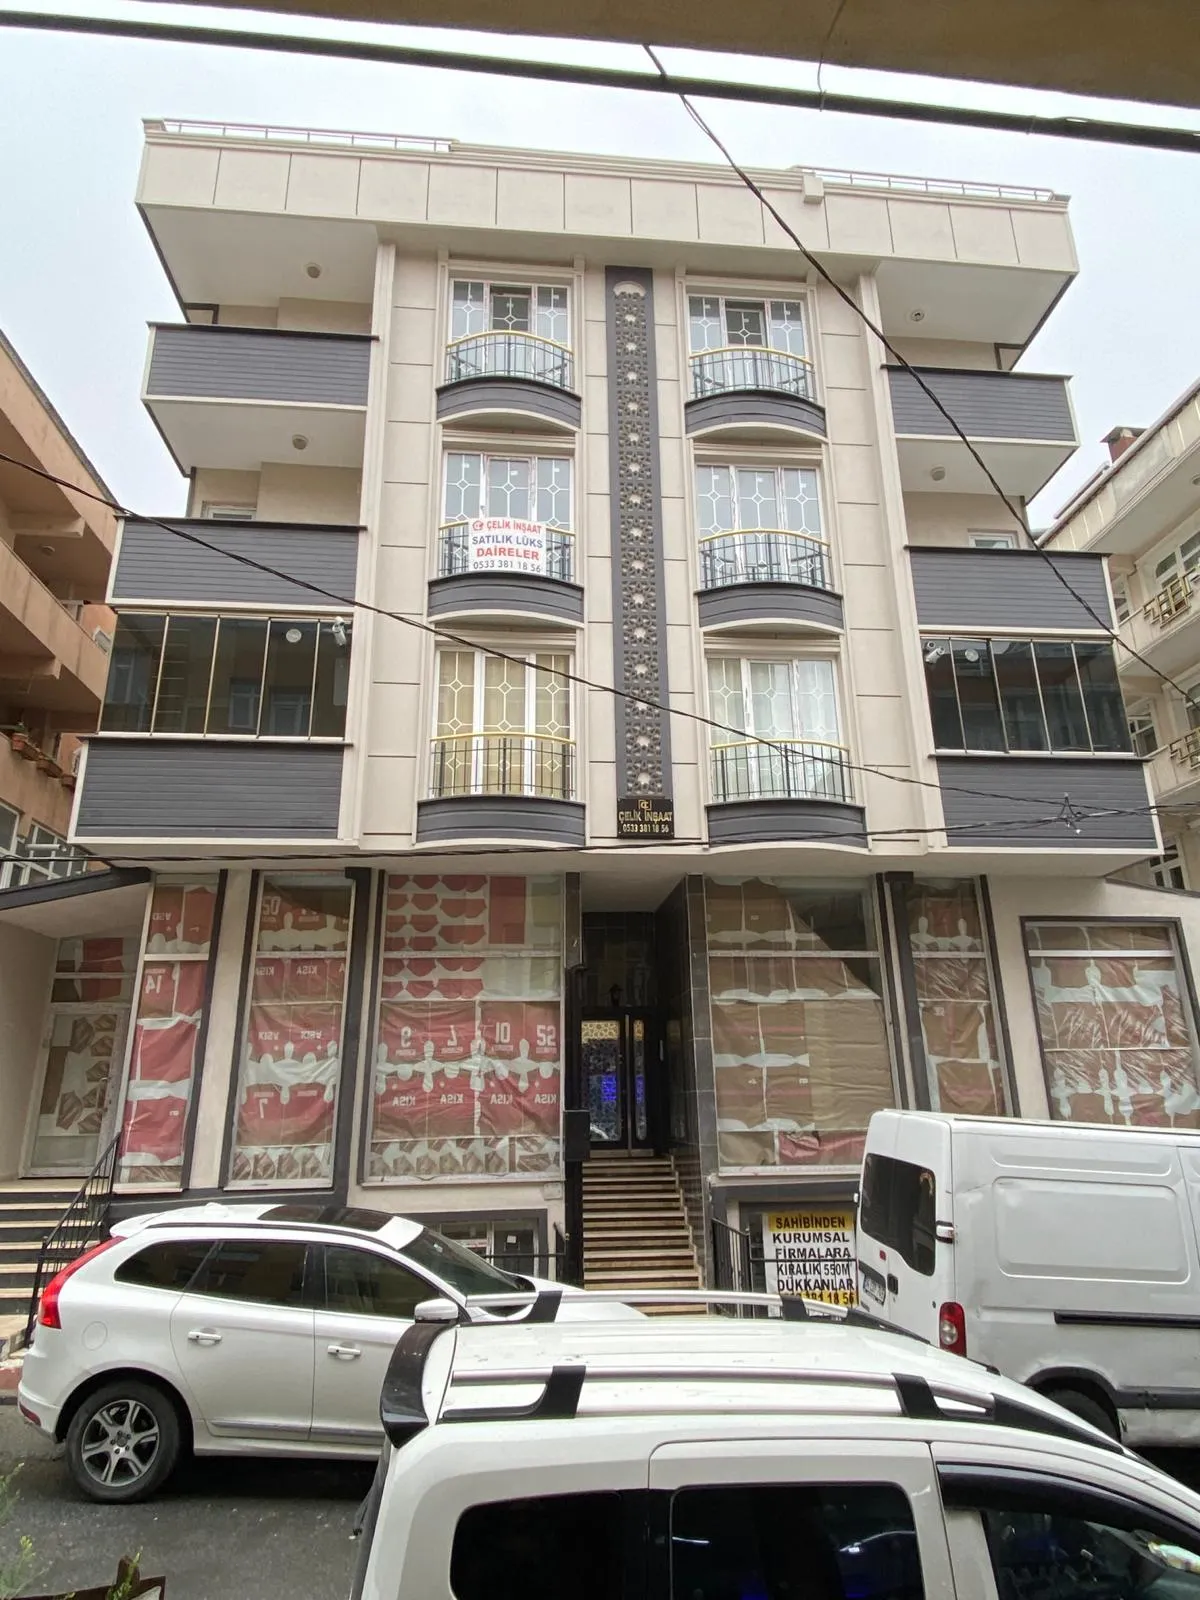 Sultangazi/Esentepe-Yunusemre Mah. De bulunan satılık daireler